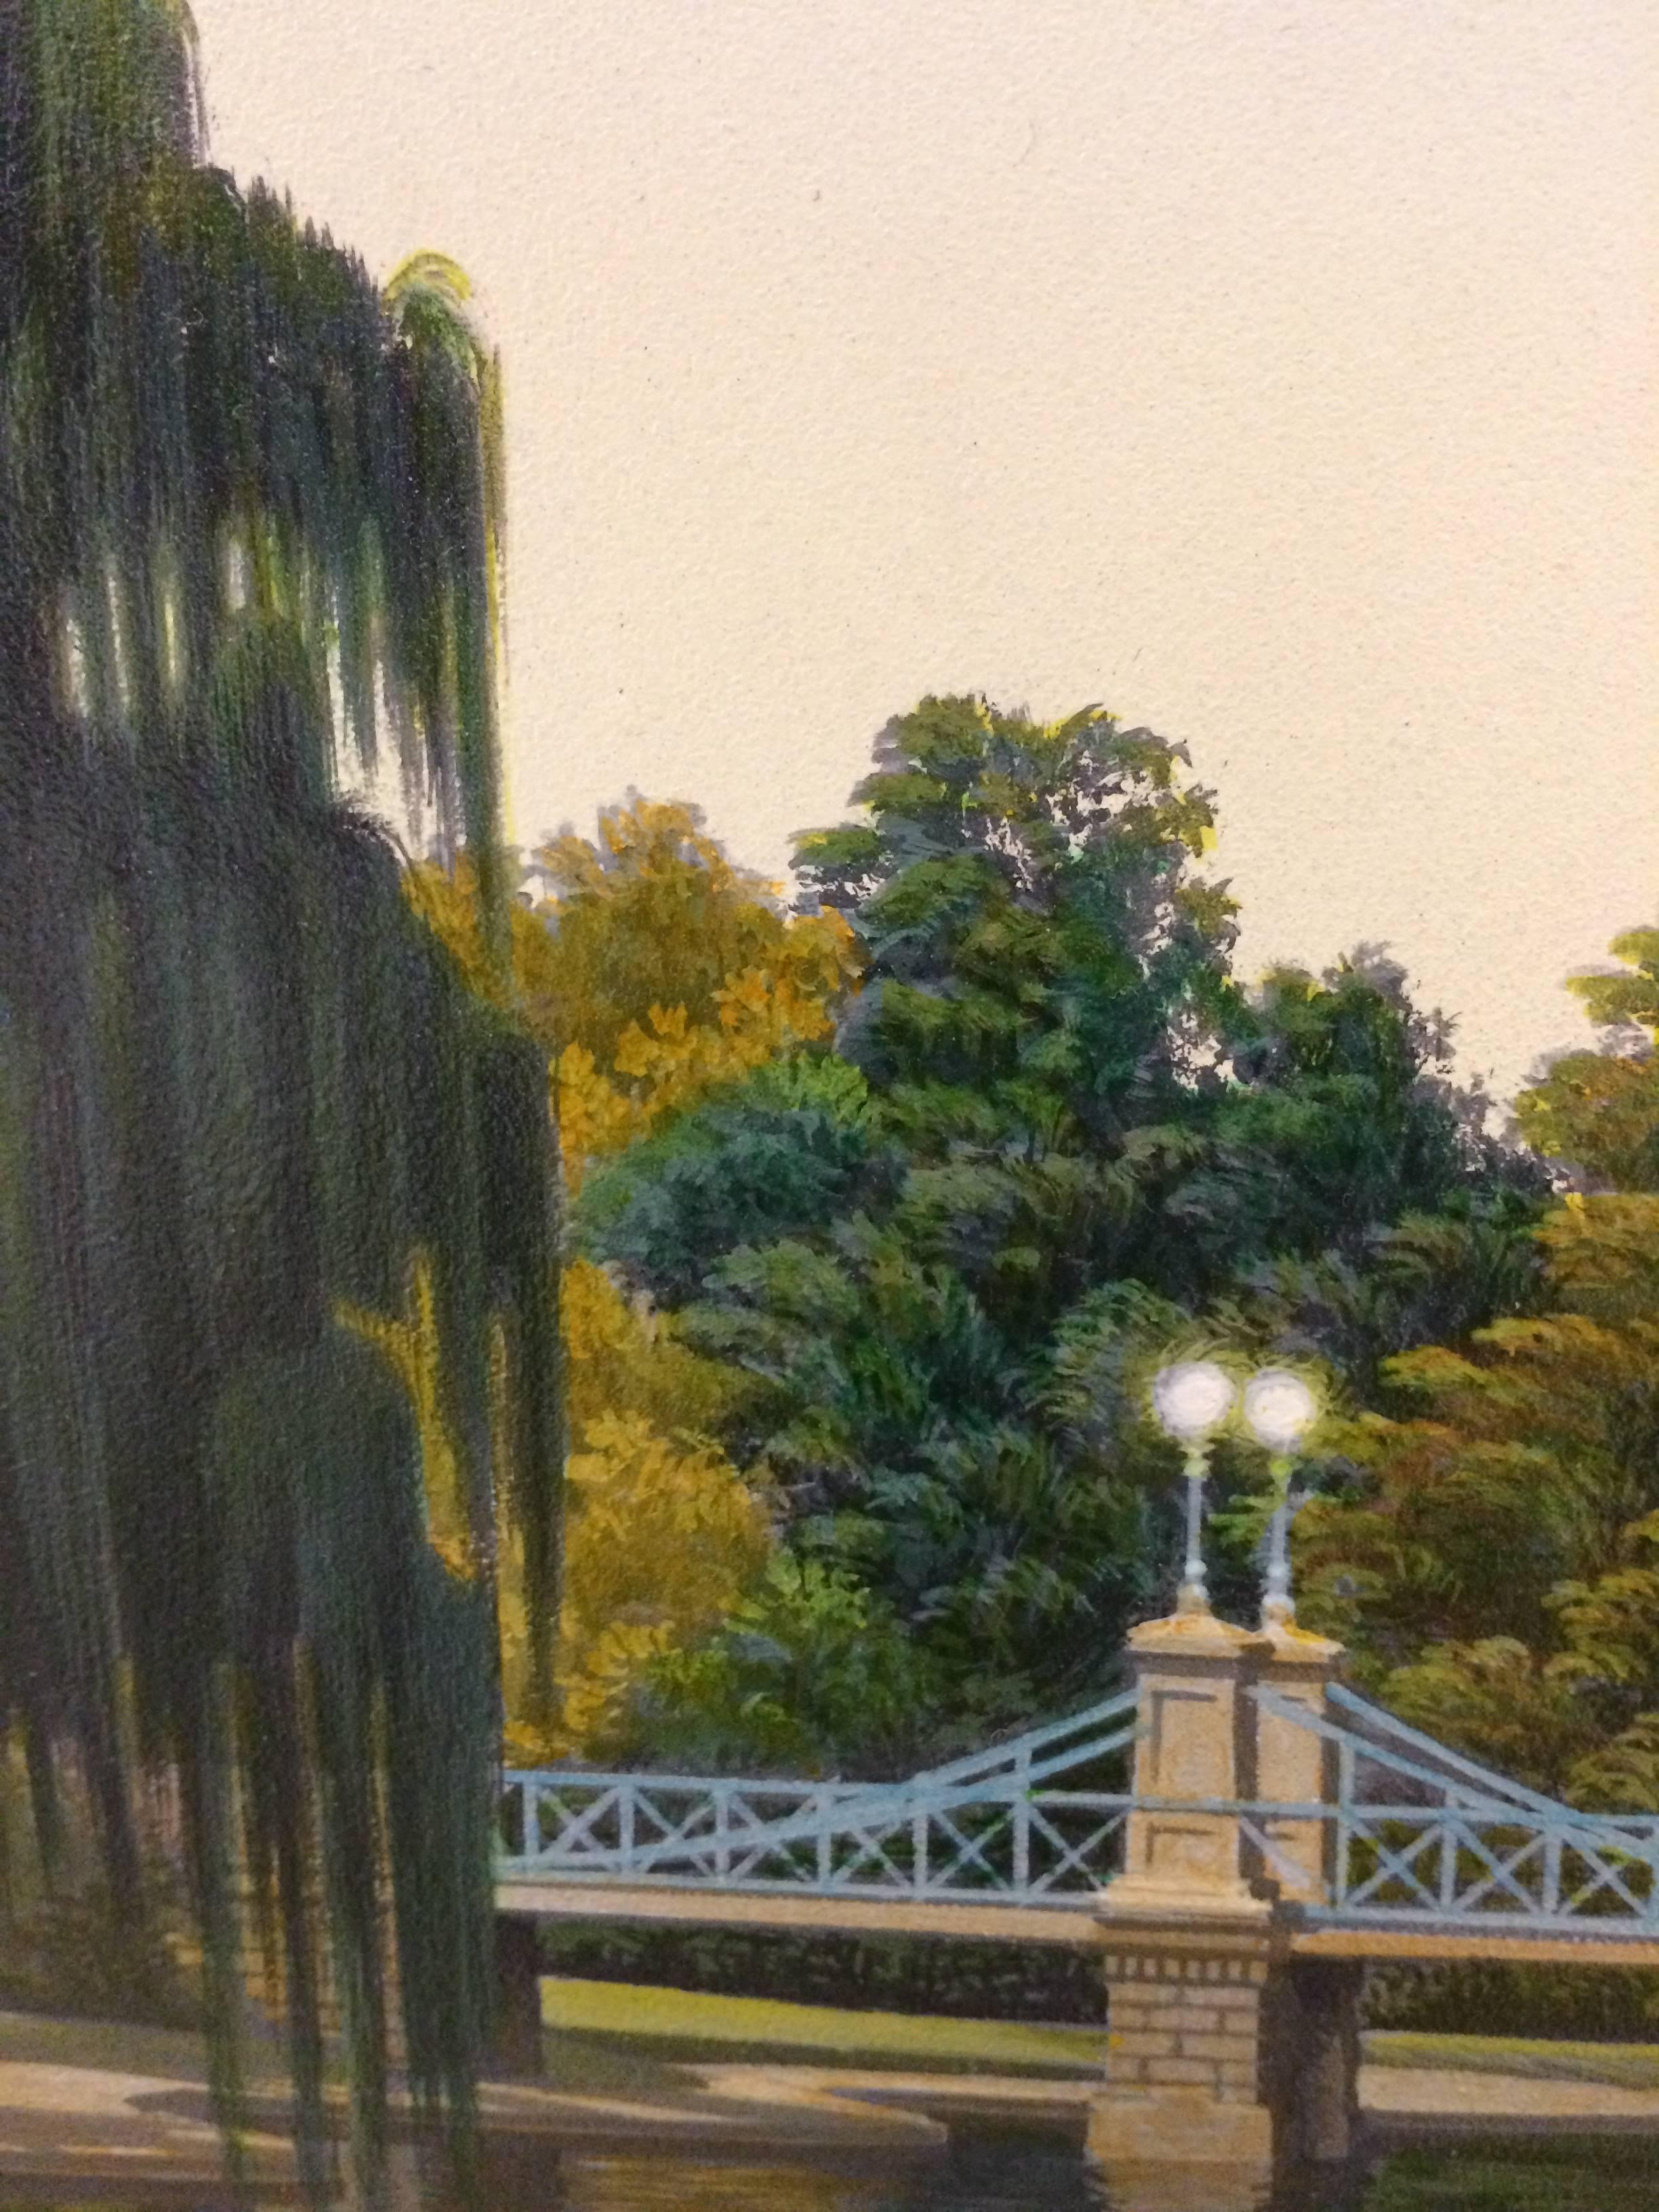 Boston Public Garden - American Realist Painting by Jim Buckels